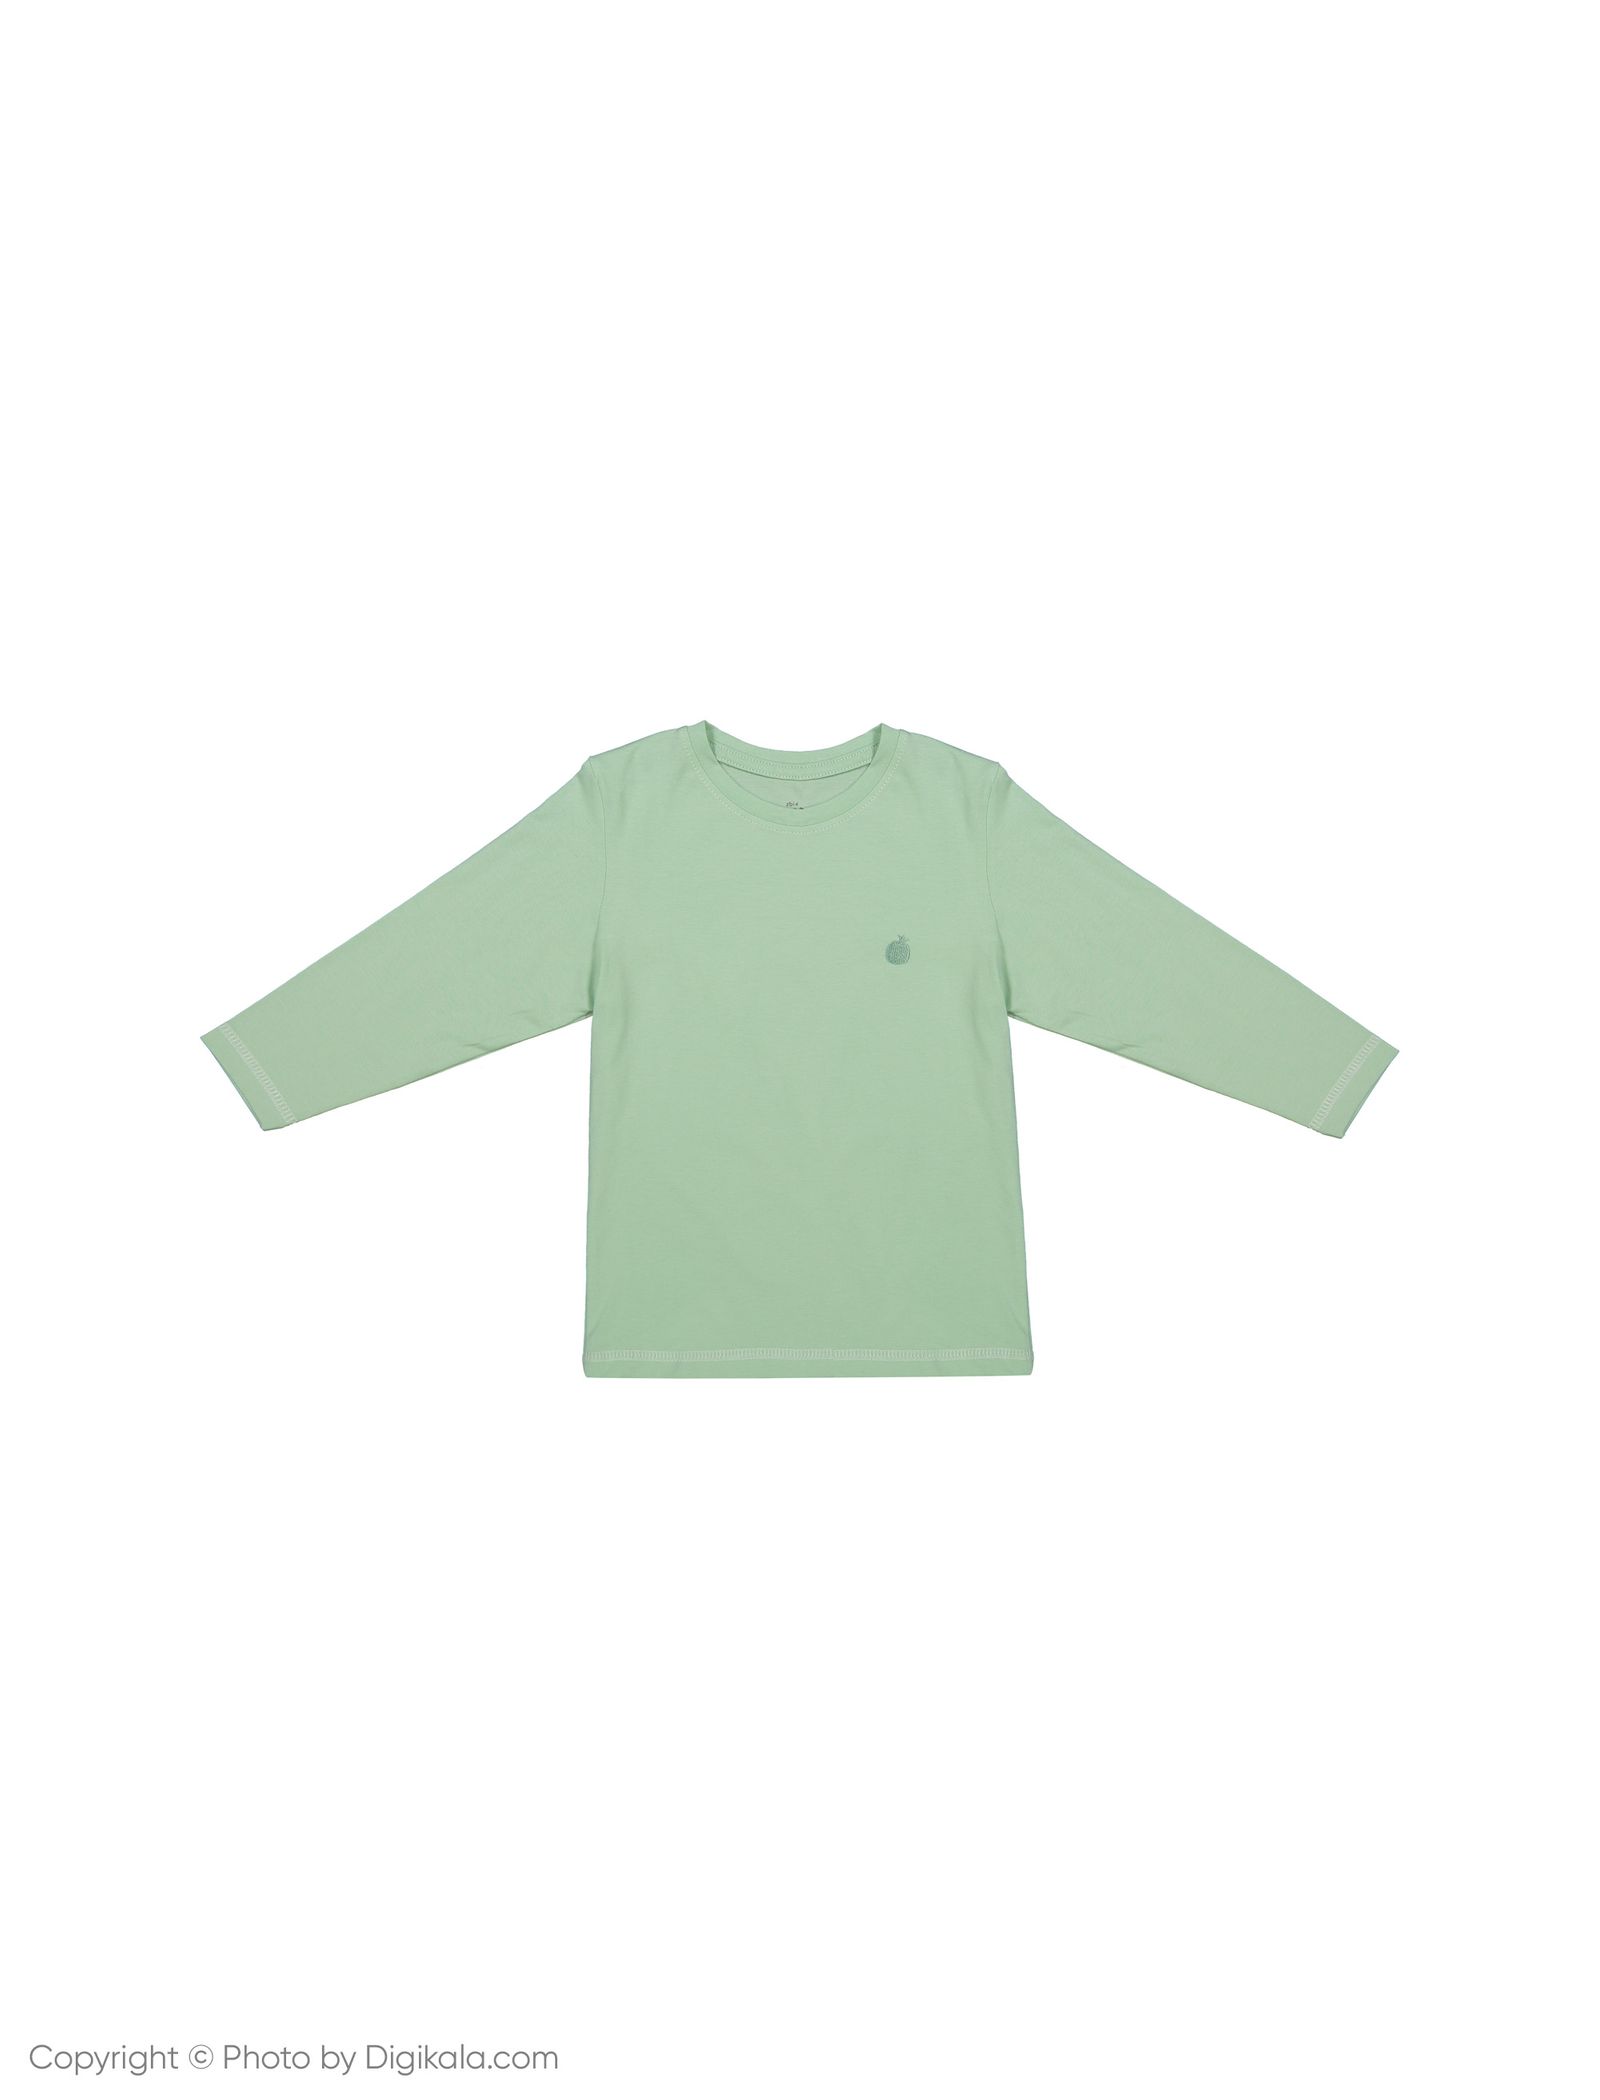 تی شرت بچگانه ناربن مدل 1521161-41 - سبز روشن - 2